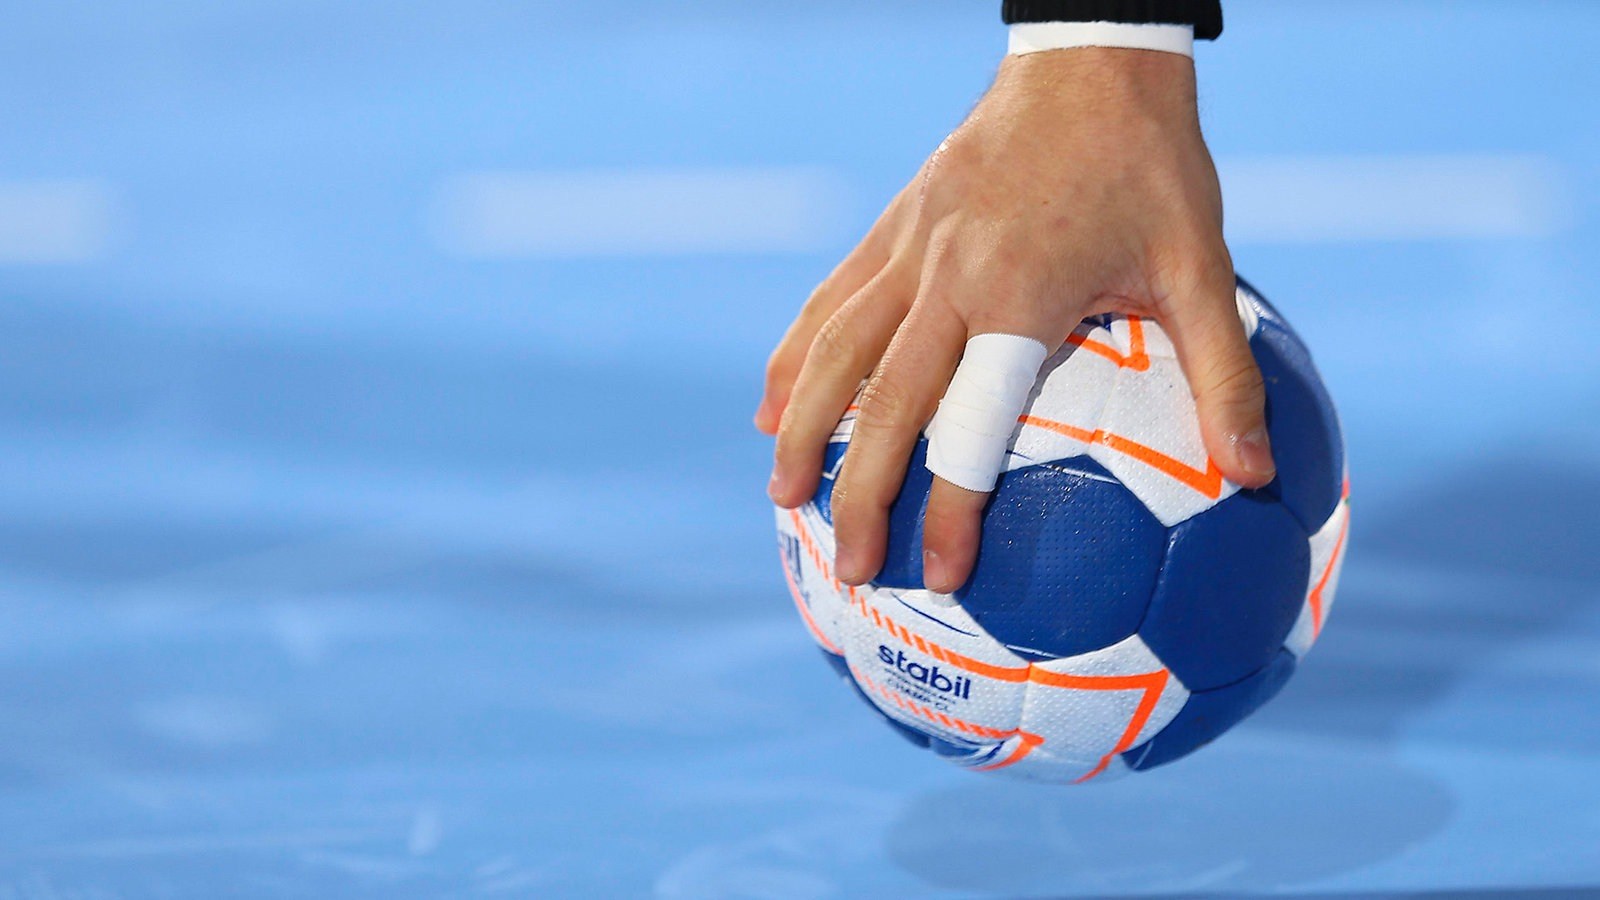 كرة اليد: مواجهات قوية في برنامج الجولة الثانية من مرحلة التتويج